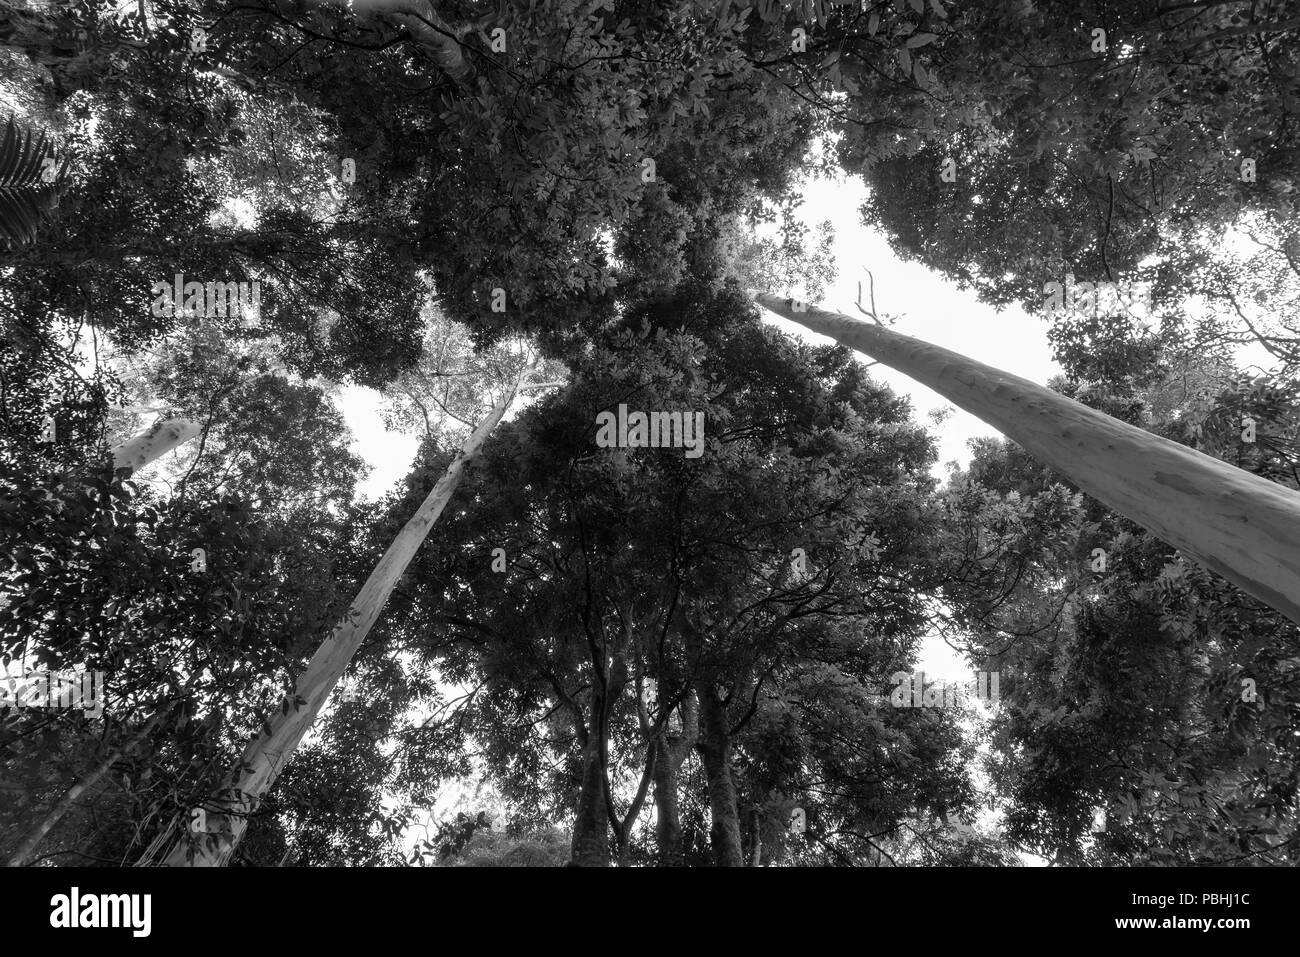 De Forêt vierge au-dessus de lignes convergentes de troncs d'eucalyptus en noir et blanc Banque D'Images